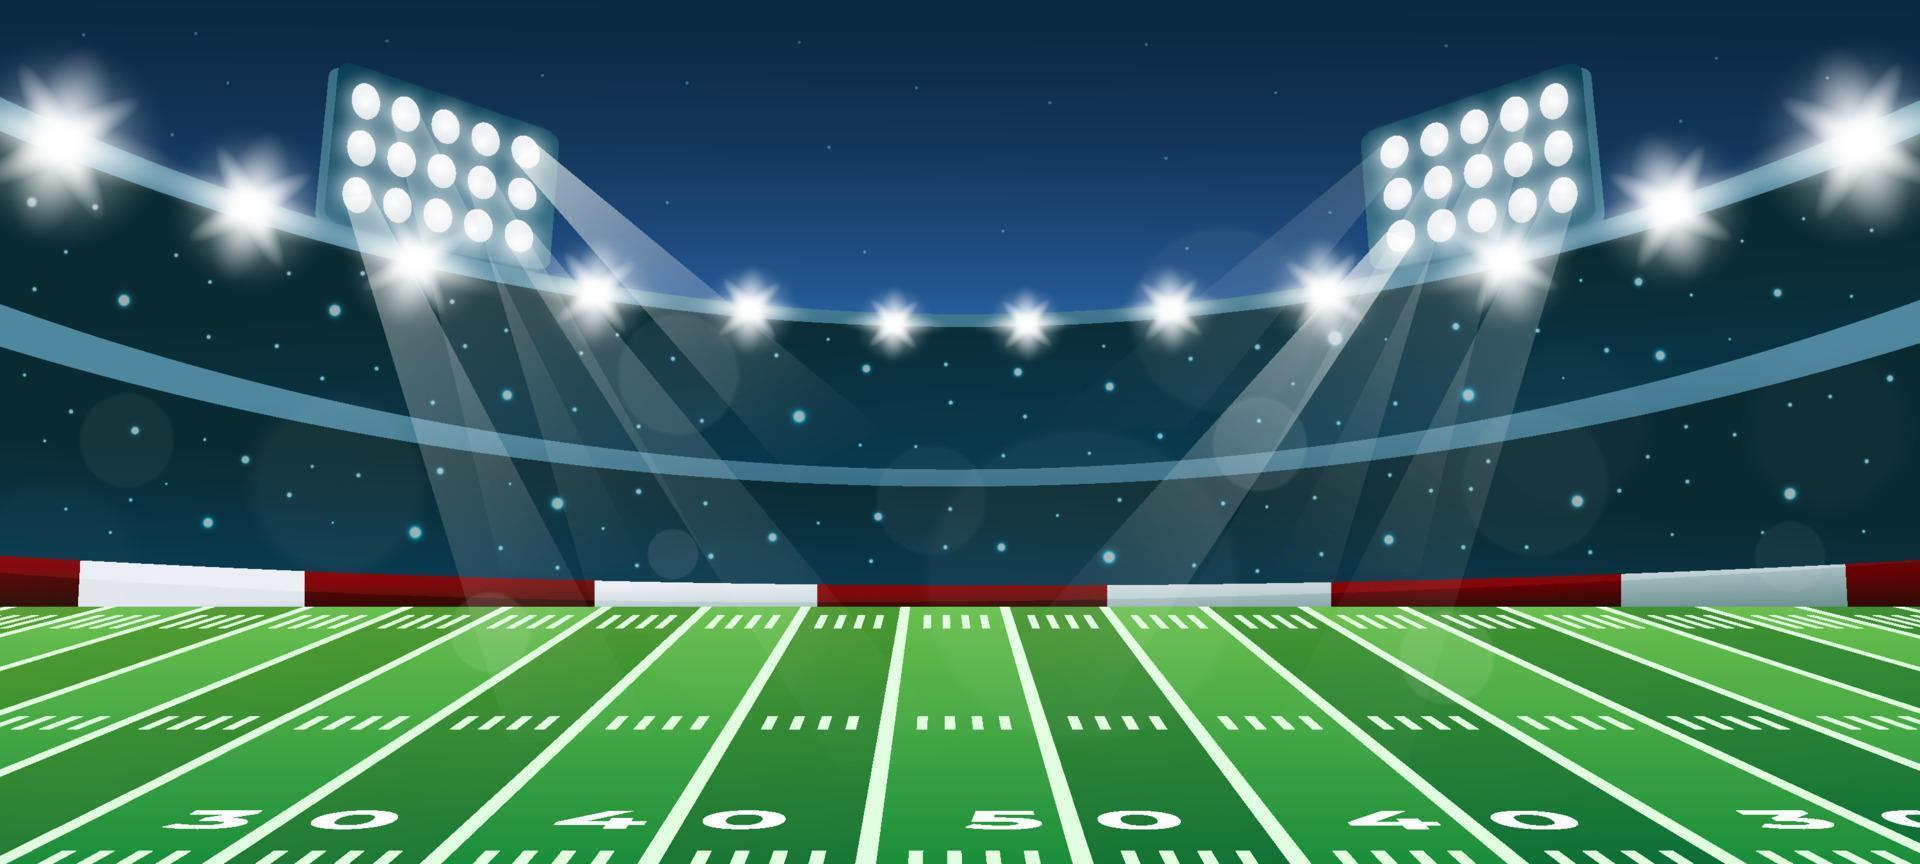 Superbowl Stadium in Night Background vector